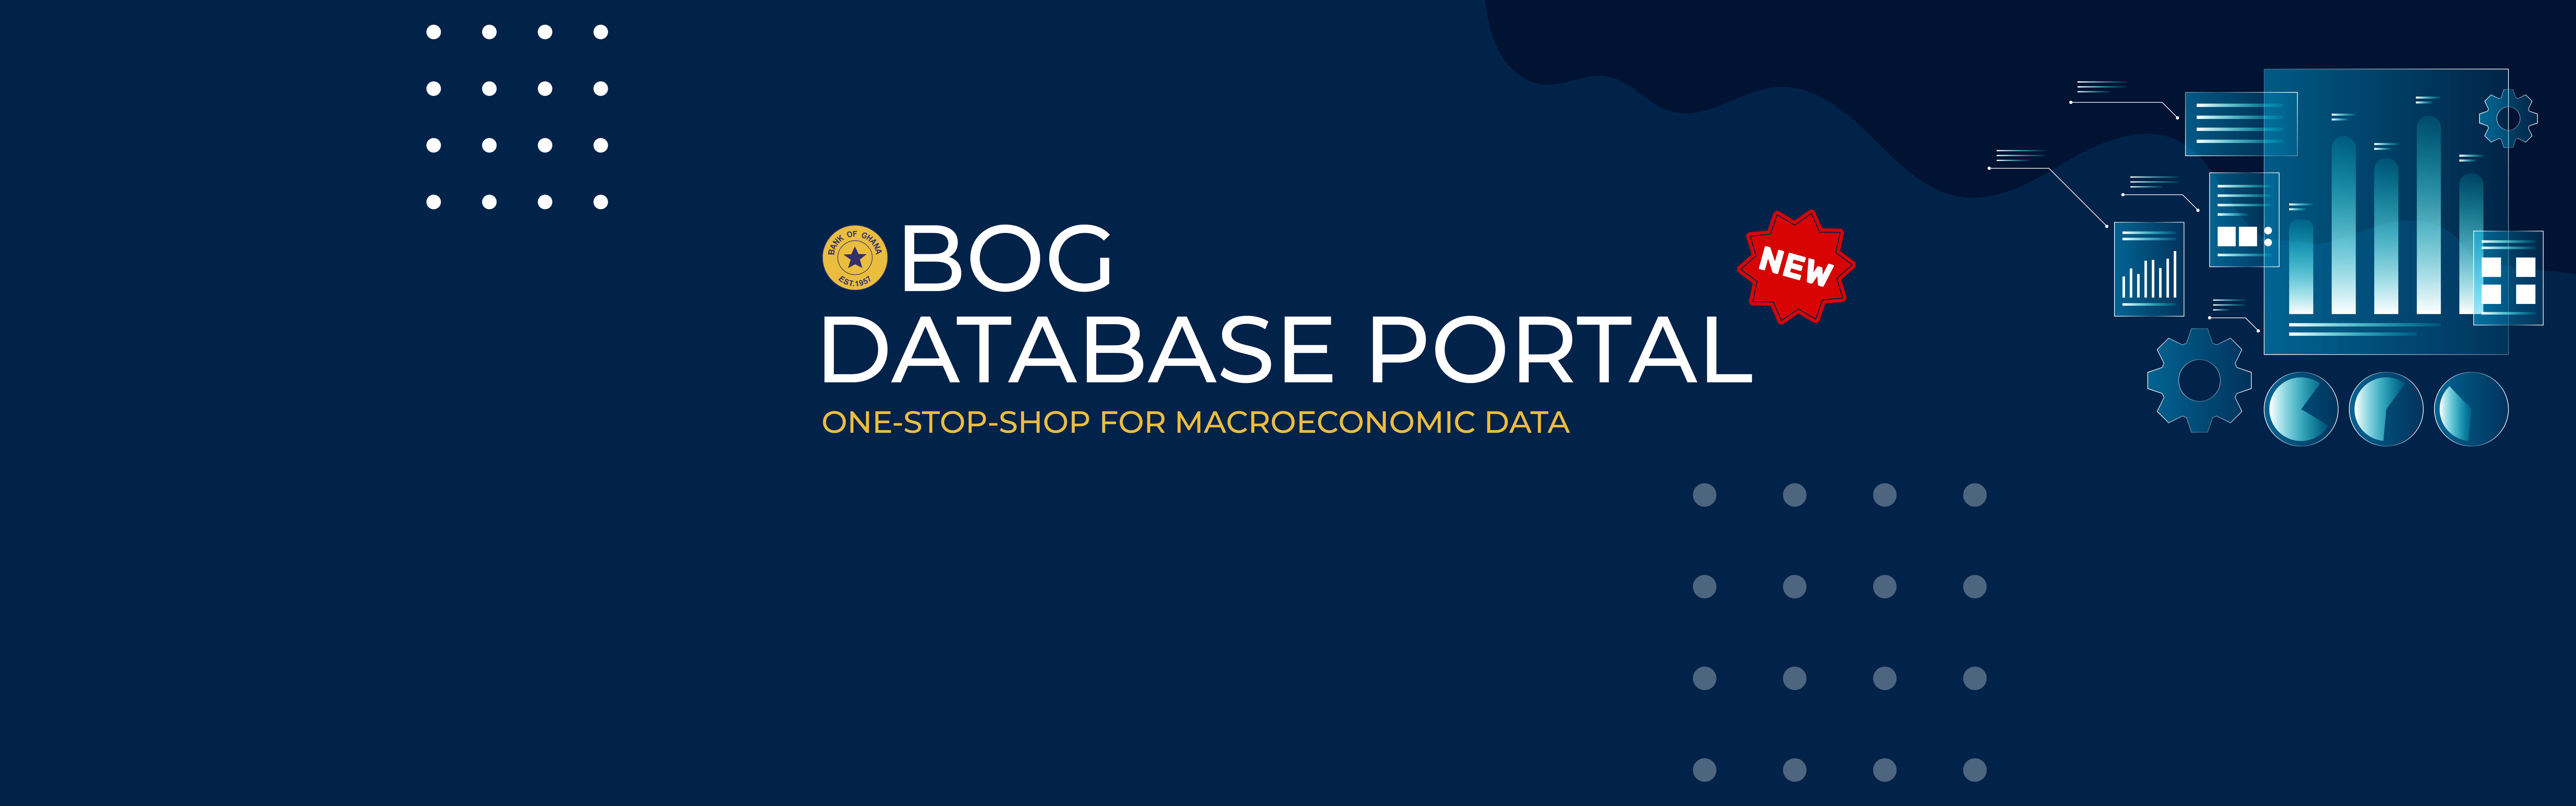 BOG Database